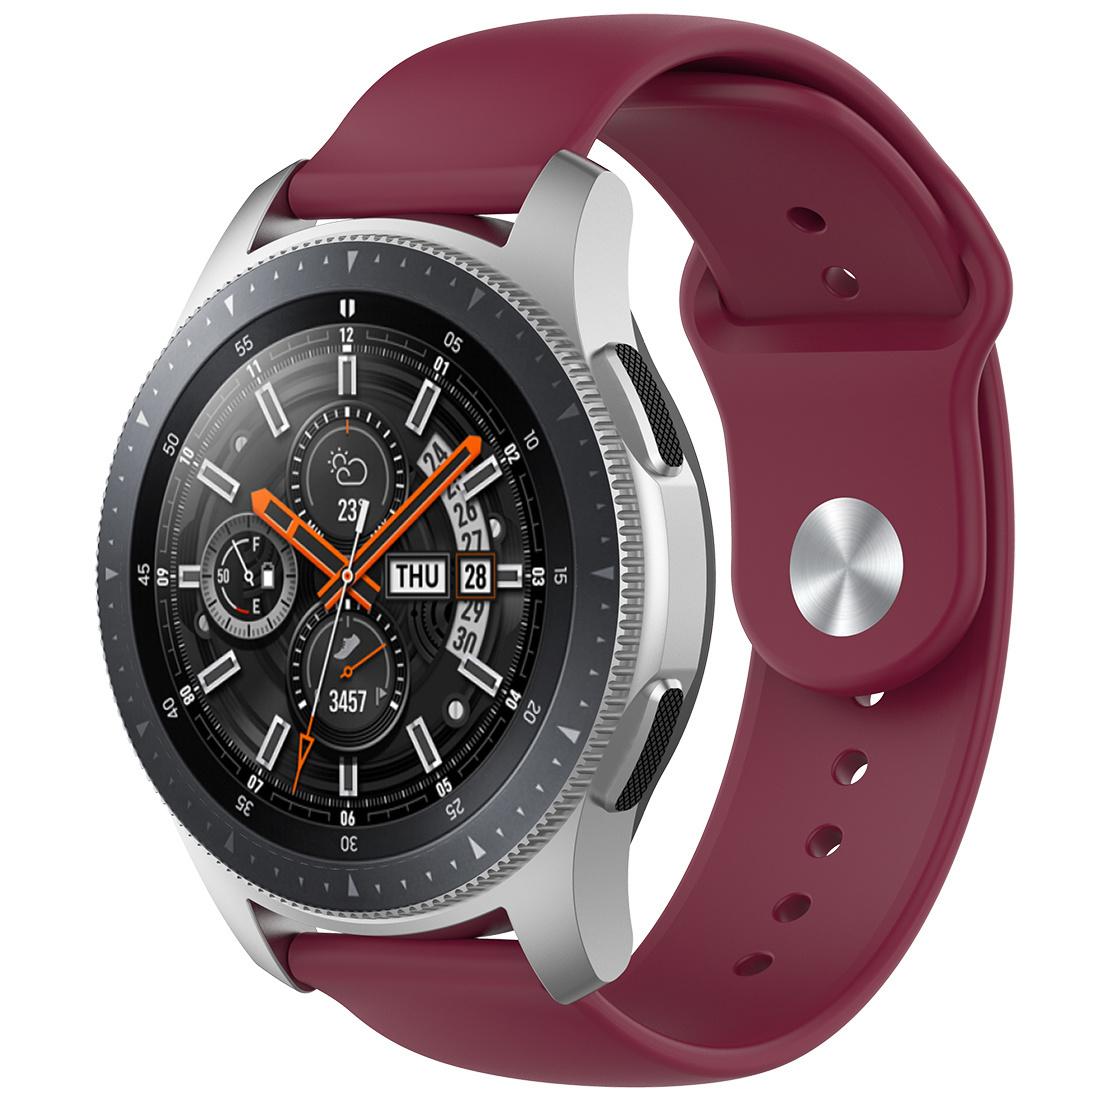 Correa deportiva de silicona para el Samsung Galaxy Watch - rojo vino